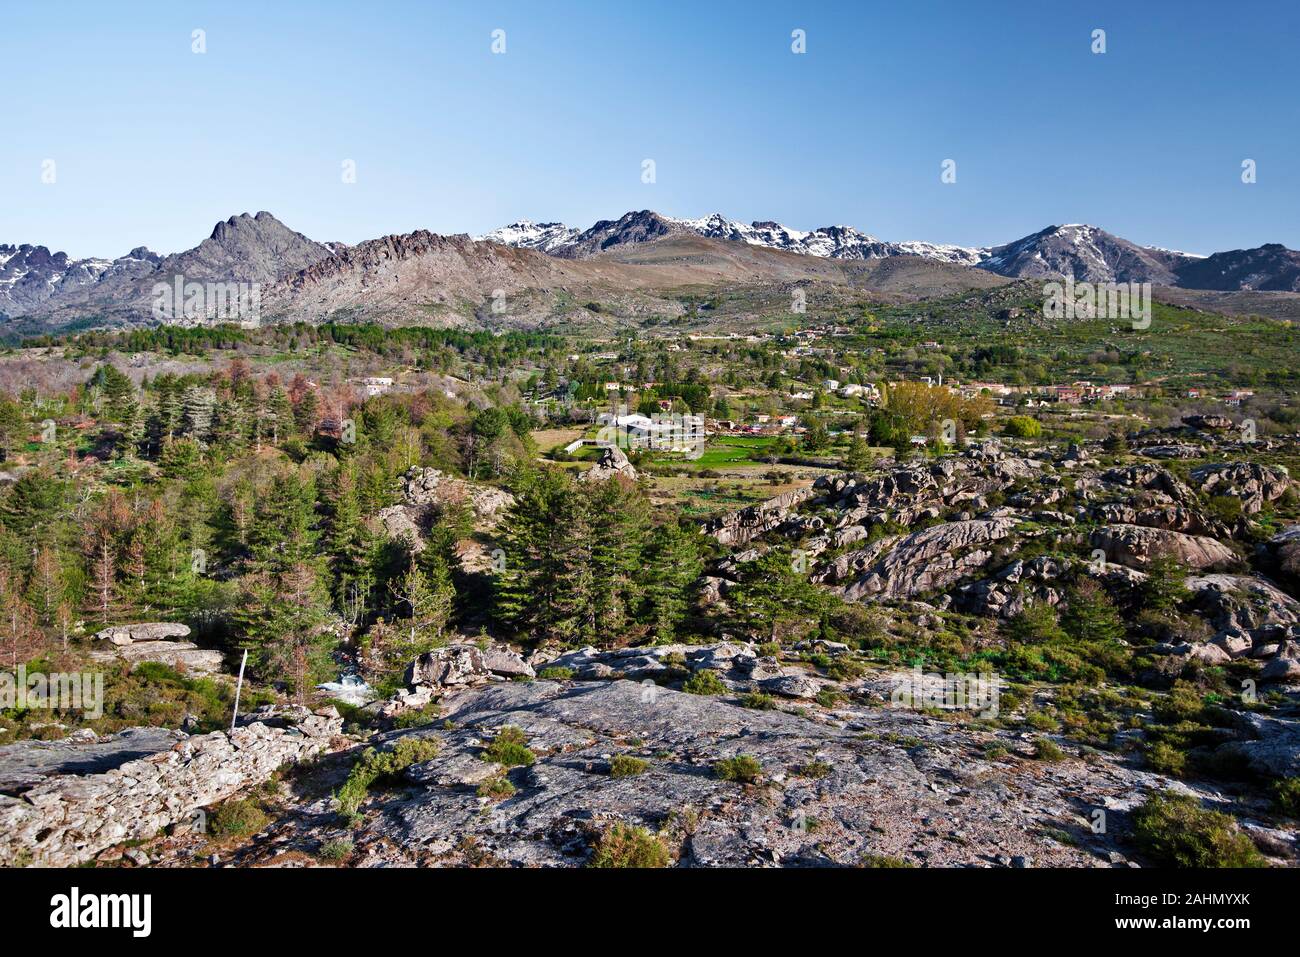 Centrale, dans la région Corse Niolo dominé par Monte Cinto, Albertasse la chaîne de montagne et village de fermes mélangé avec des paysages forestiers et rocheux de Golo ri Banque D'Images